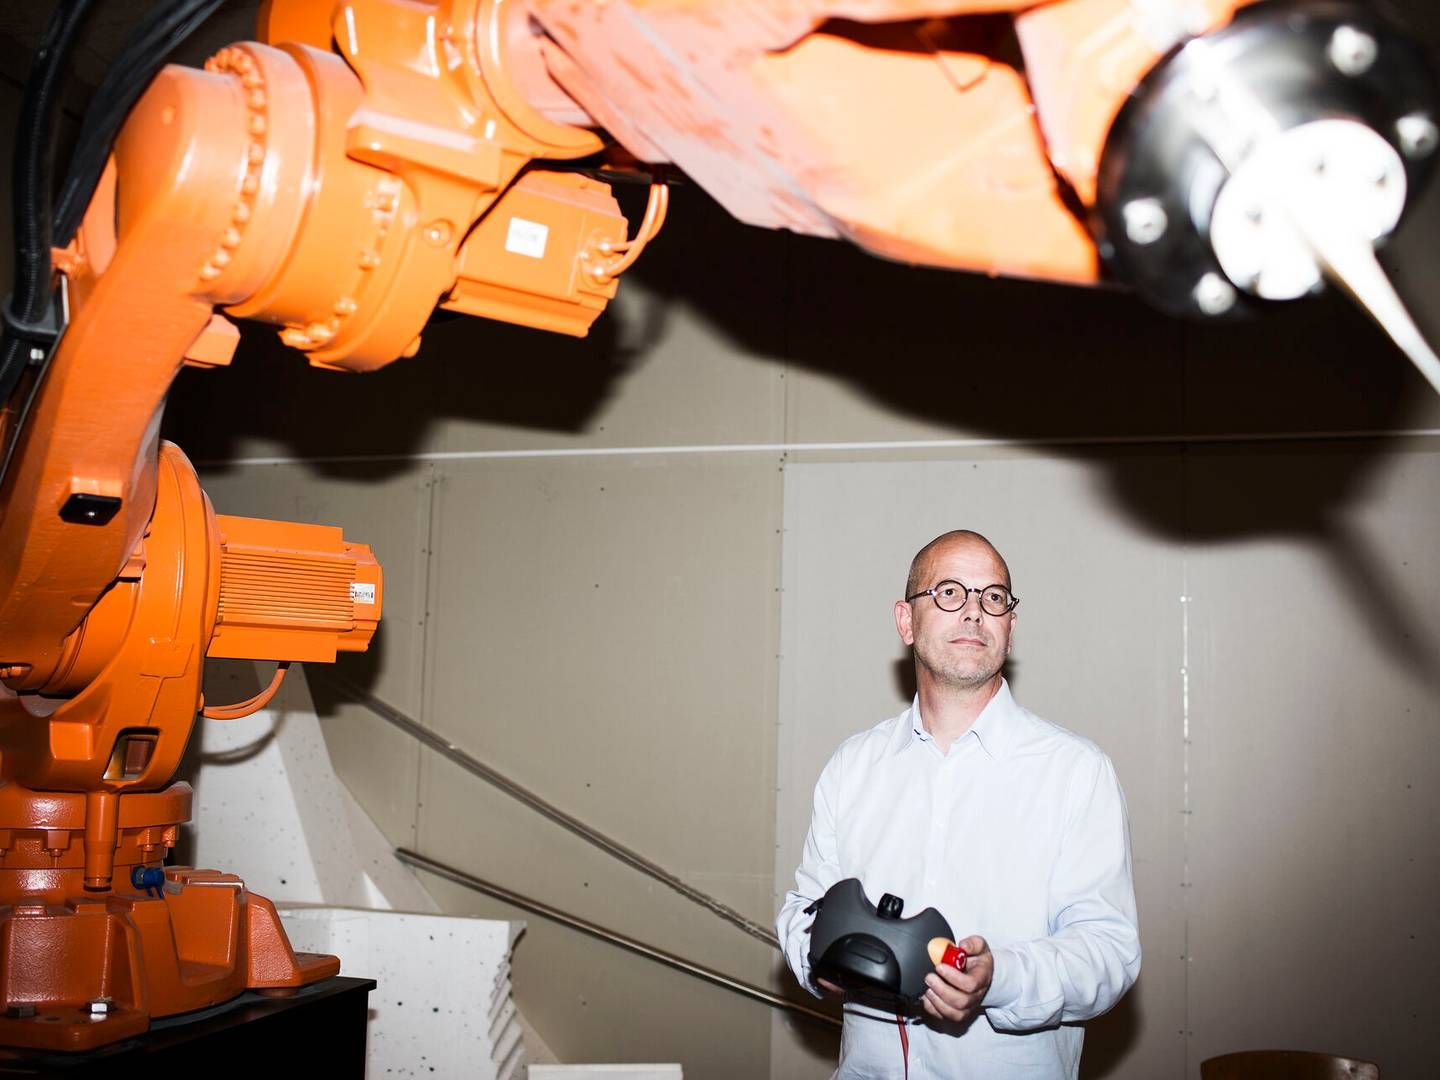 Operatører og industrirobotter som denne fra ABB skal blive bedre til at tilpasse sig hinanden gennem kommunikation. Det er målet med et forskningsprojekt fra SDU. | Foto: Katrine Marie Kragh/Jyllands-Posten/Ritzau Scanpix